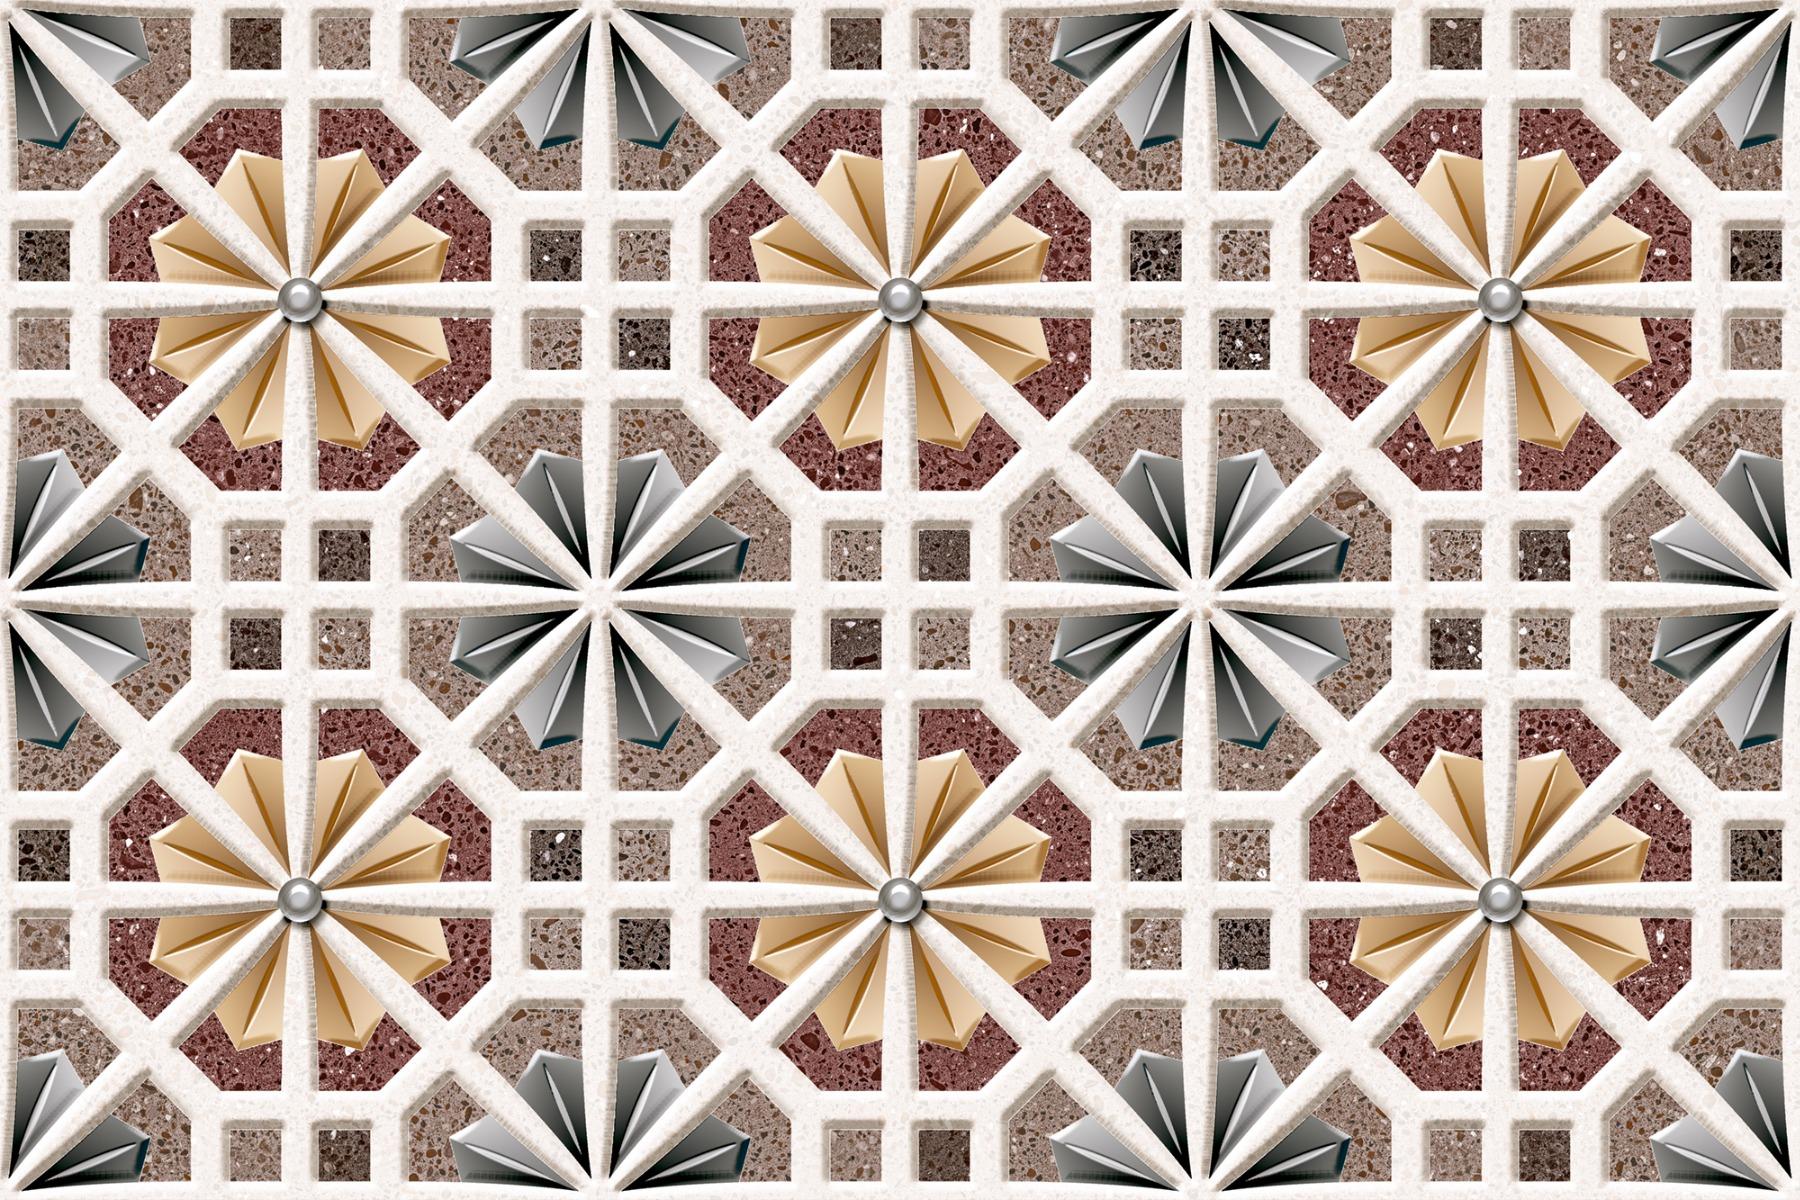 Matte Finish Tiles for Bathroom Tiles, Kitchen Tiles, Balcony Tiles